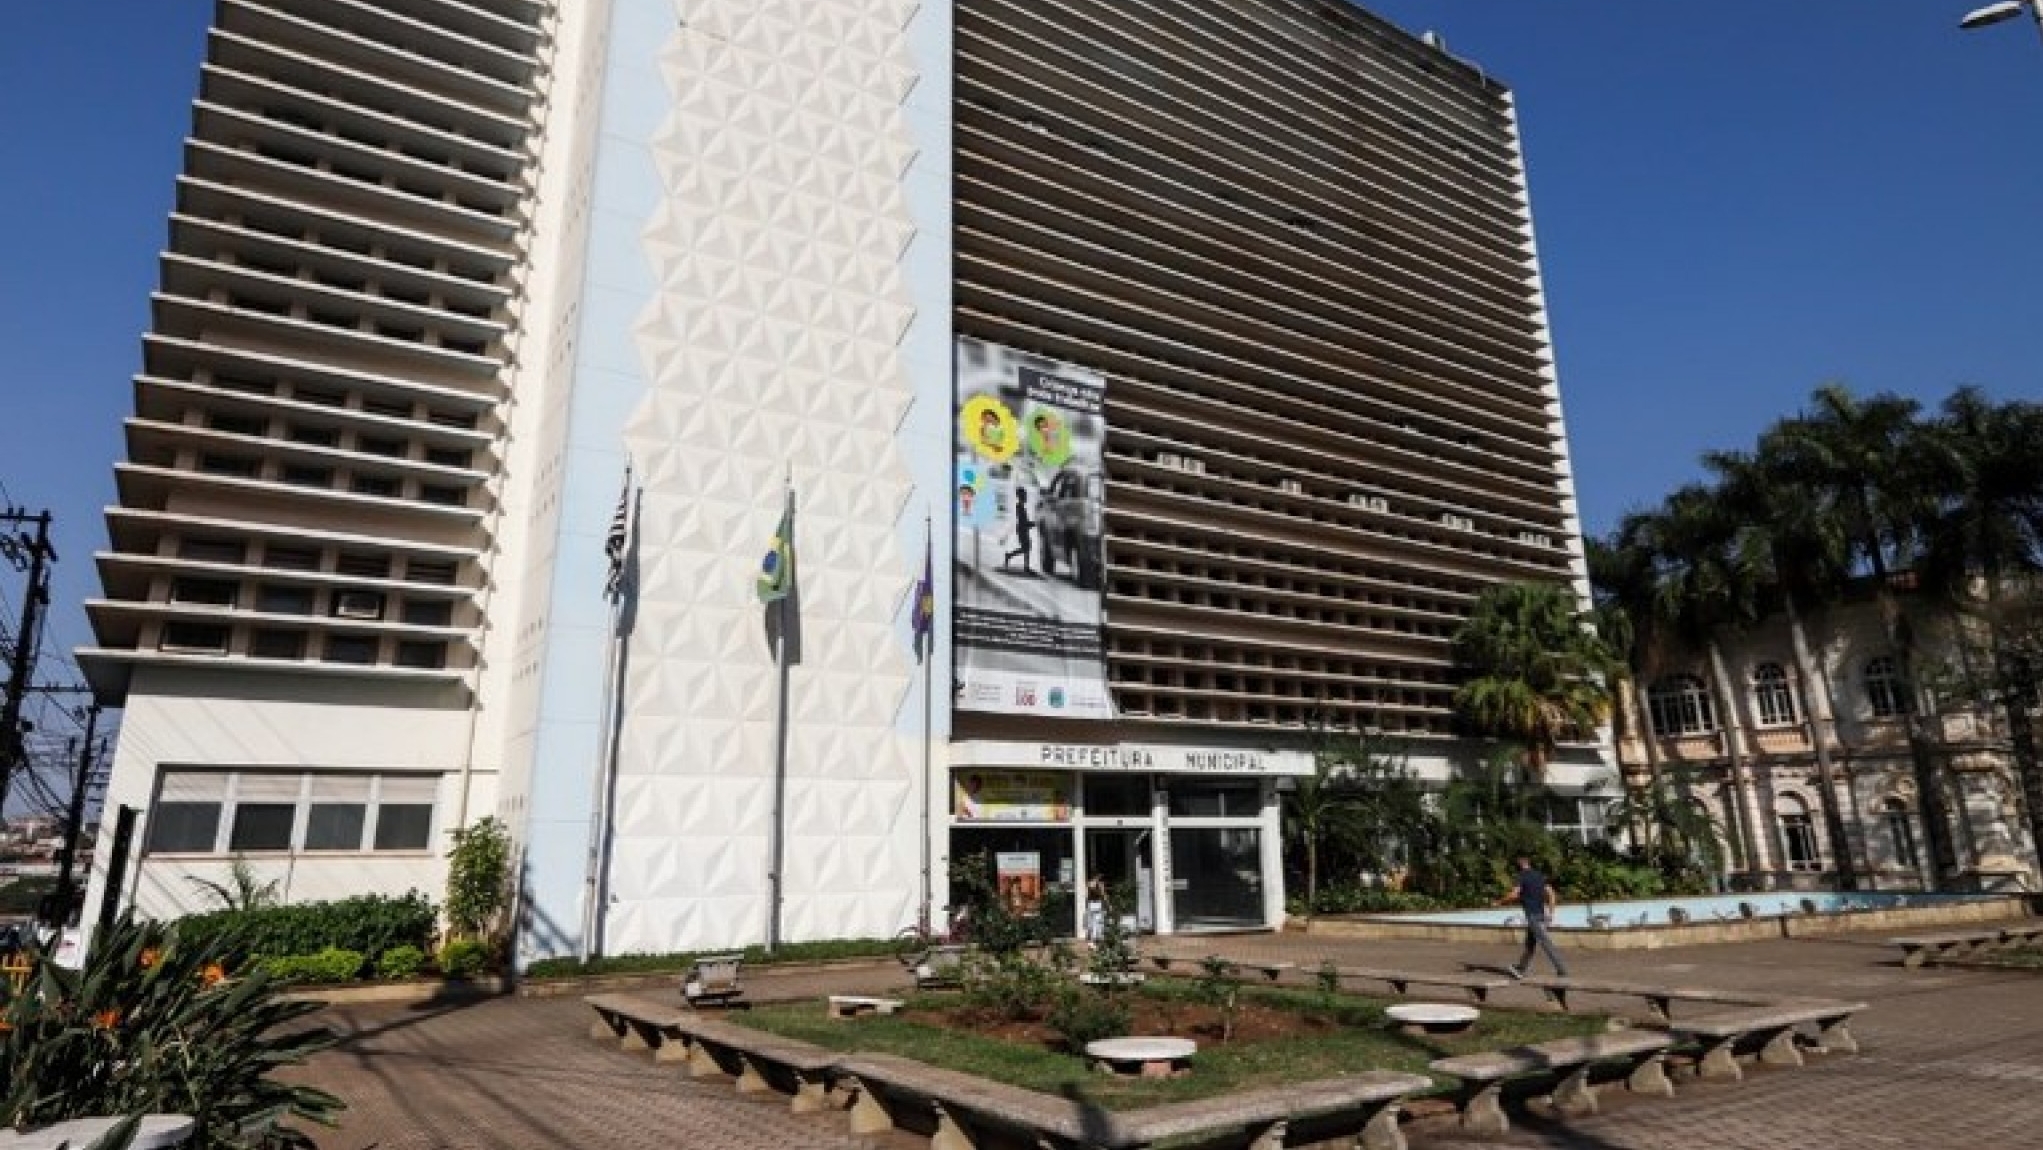 Final de semana prolongado tem grandes shows gratuitos - Prefeitura de  Araraquara